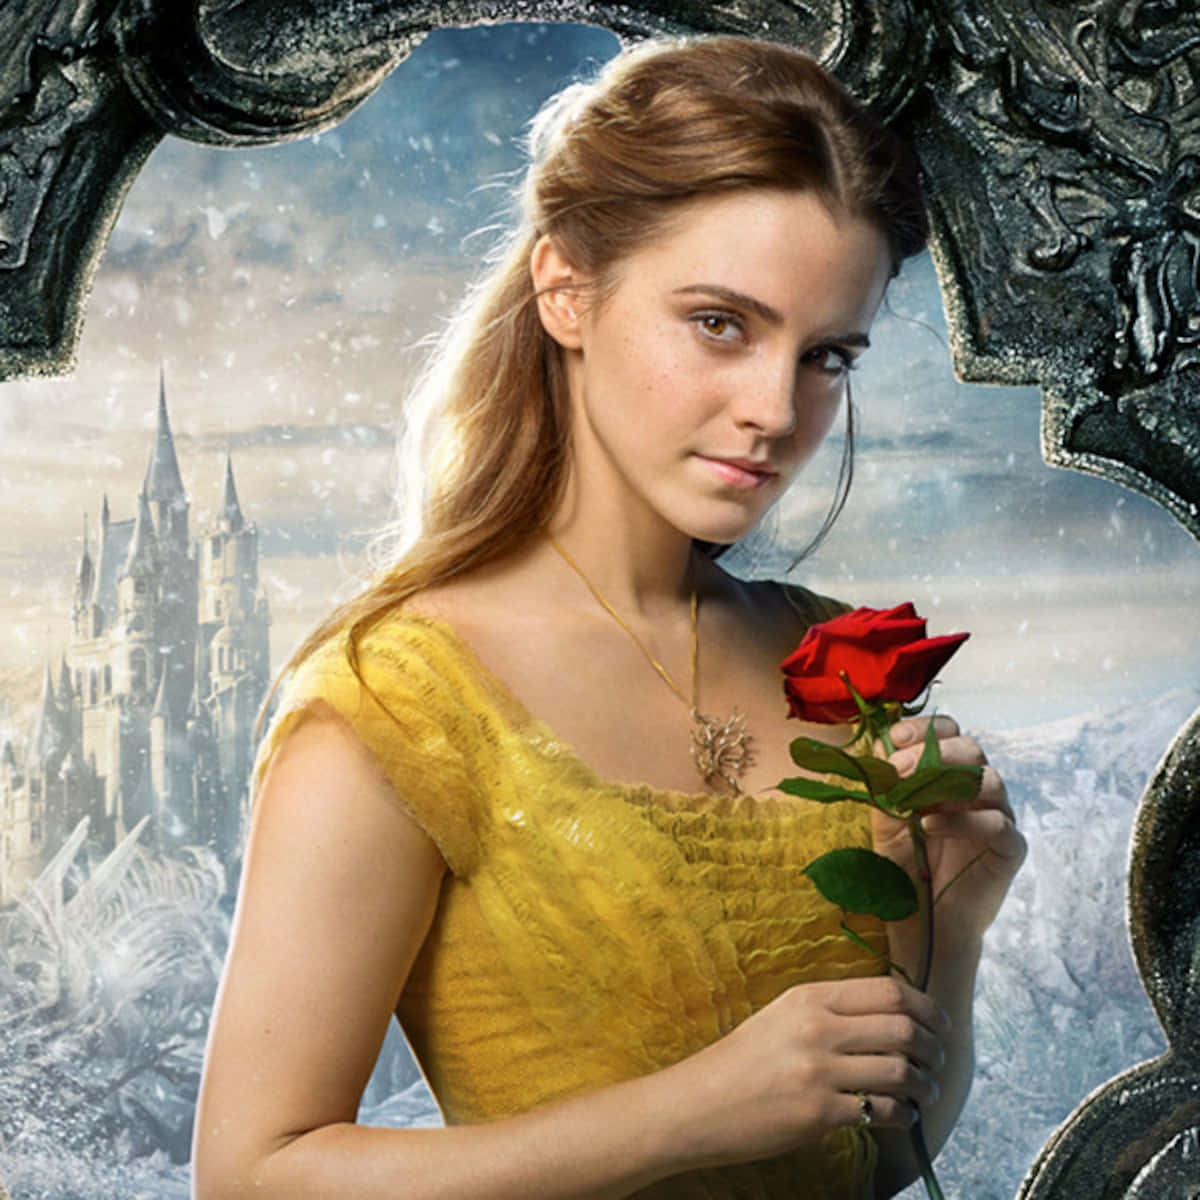 Belle og Besten opdager venskab i et magisk rosen felt.